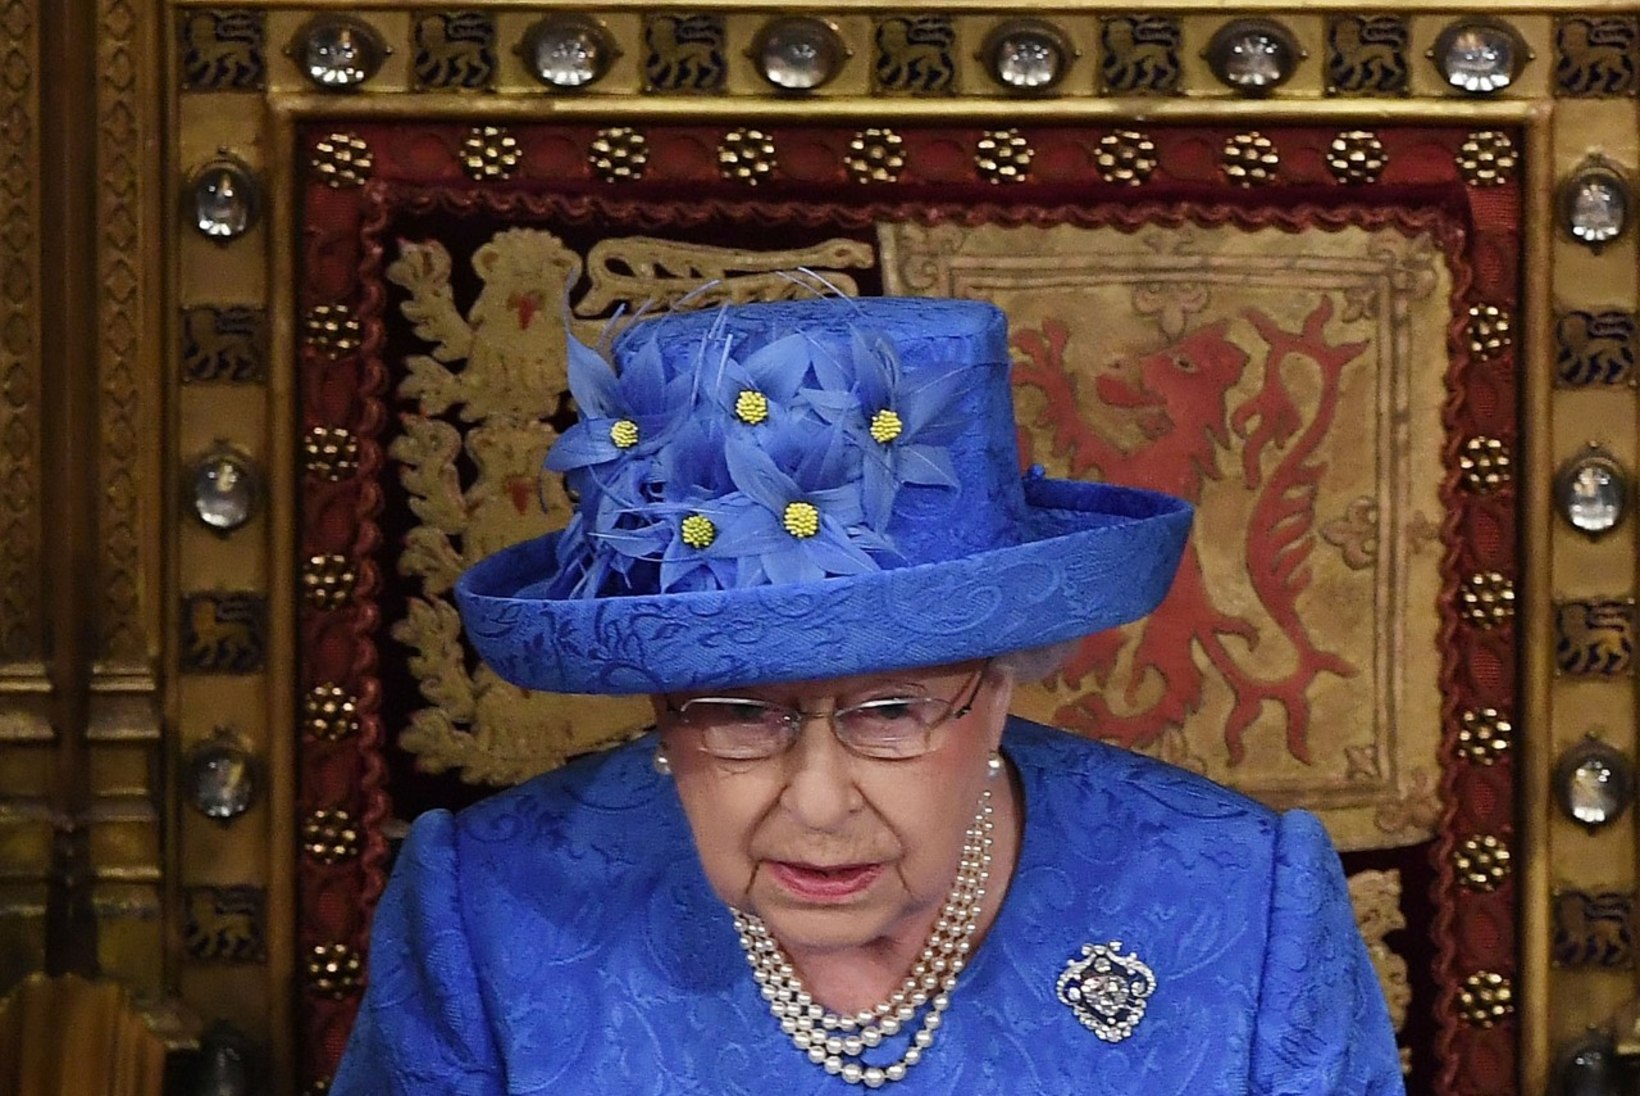 Kas kuninganna kübar meenutab euroliidu lippu?